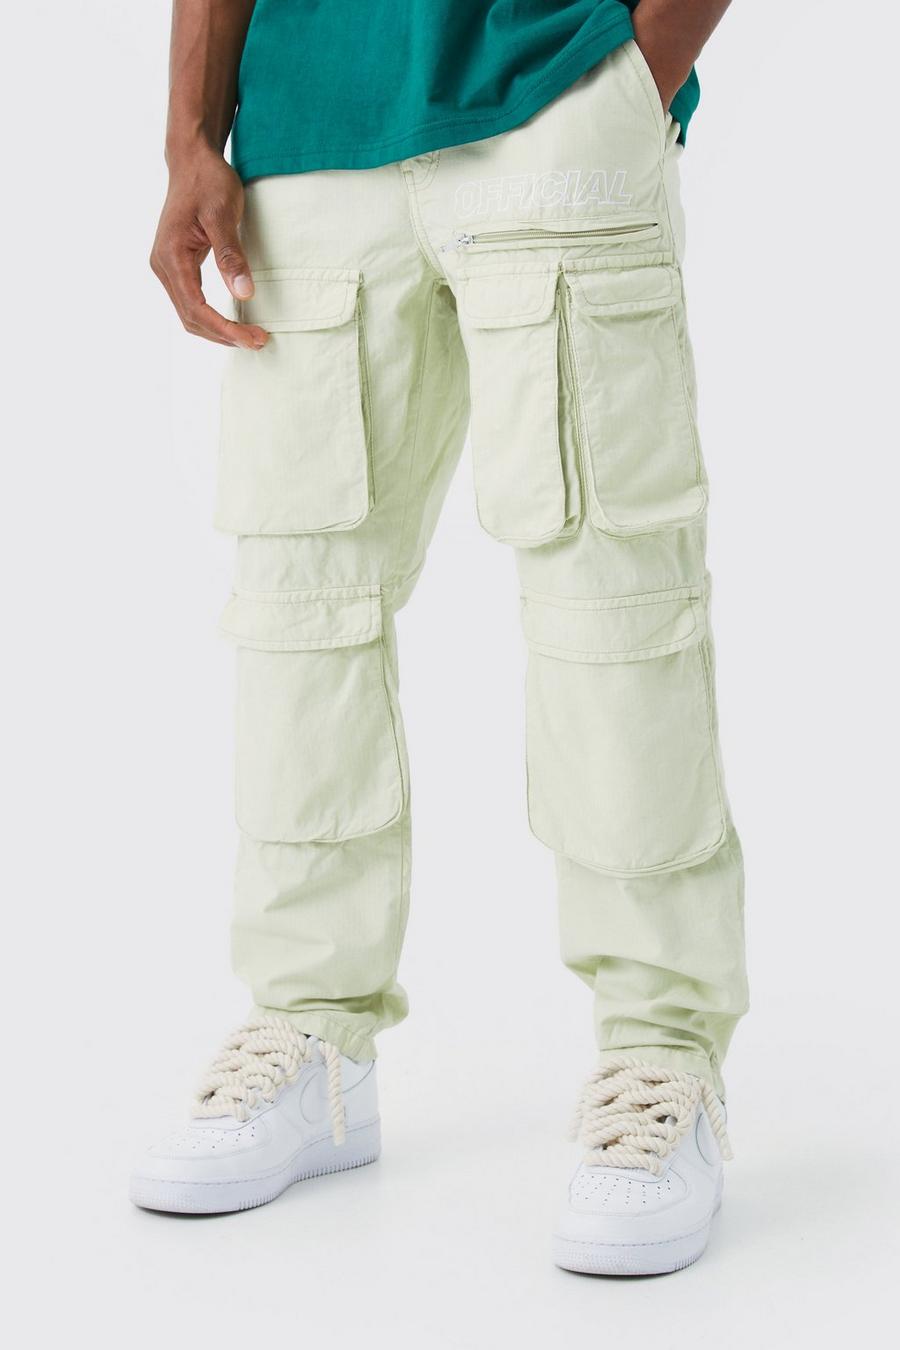 Pantalón cargo de pernera recta con costuras antidesgarros y marca en tonos neutros, Sage